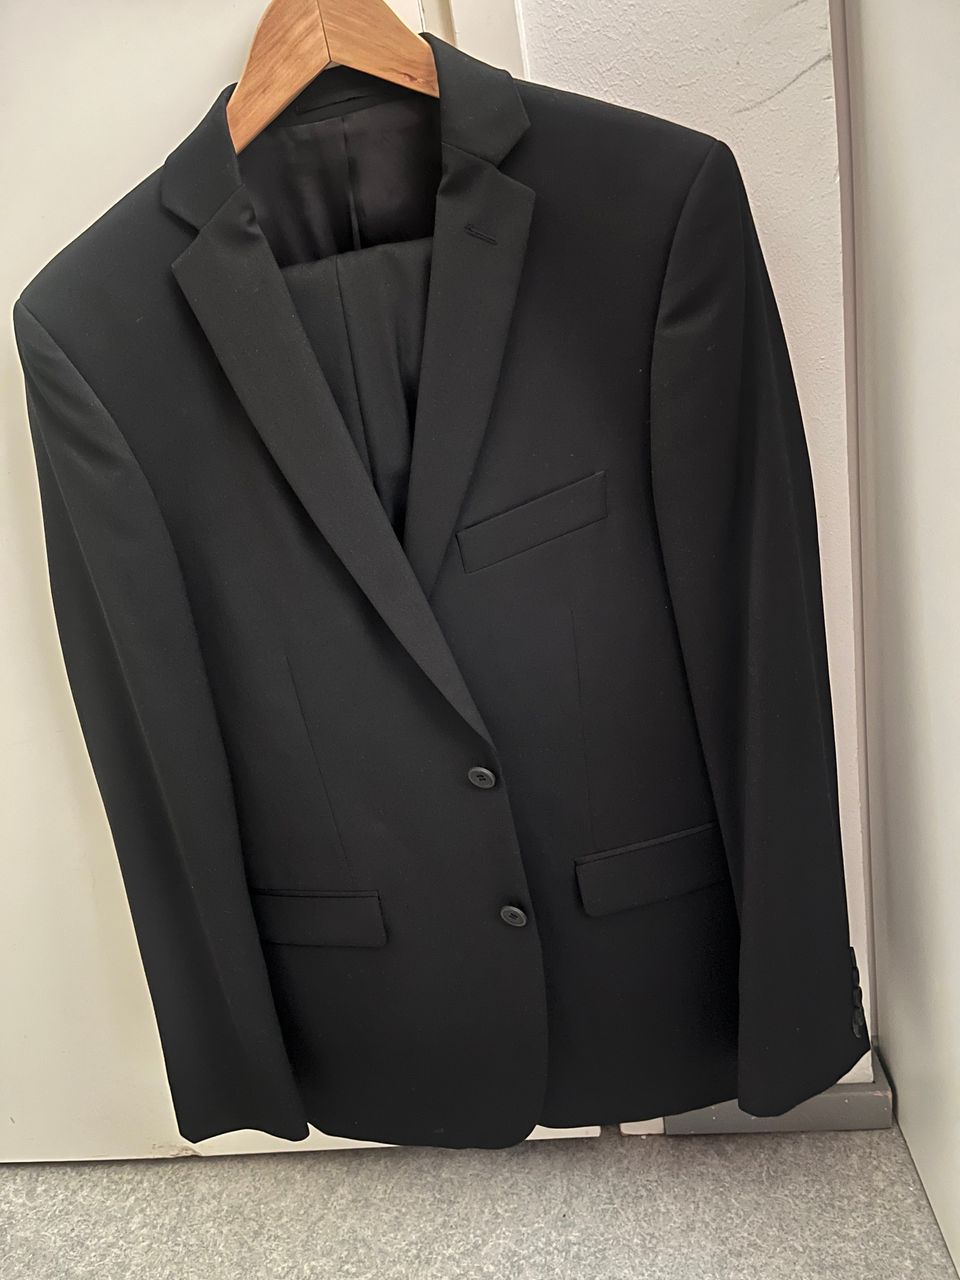 Dressmann musta puku, koko 50, kuin uusi